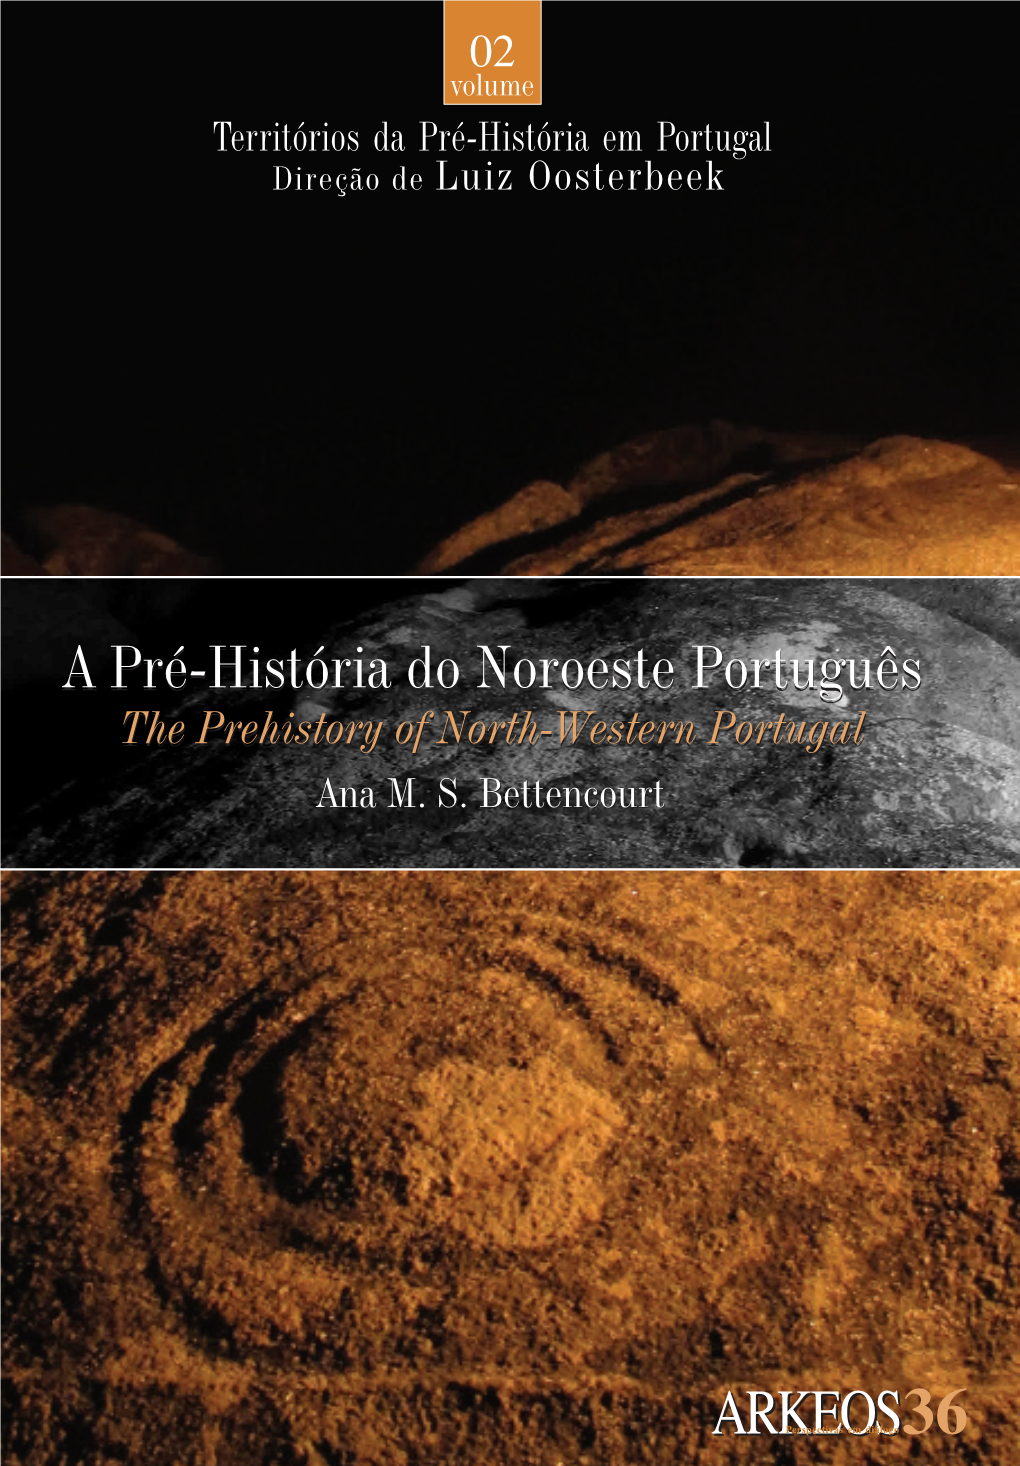 Vol. 2 a Pré-História Do Noroeste Português the Prehistory of North-Western Portugal